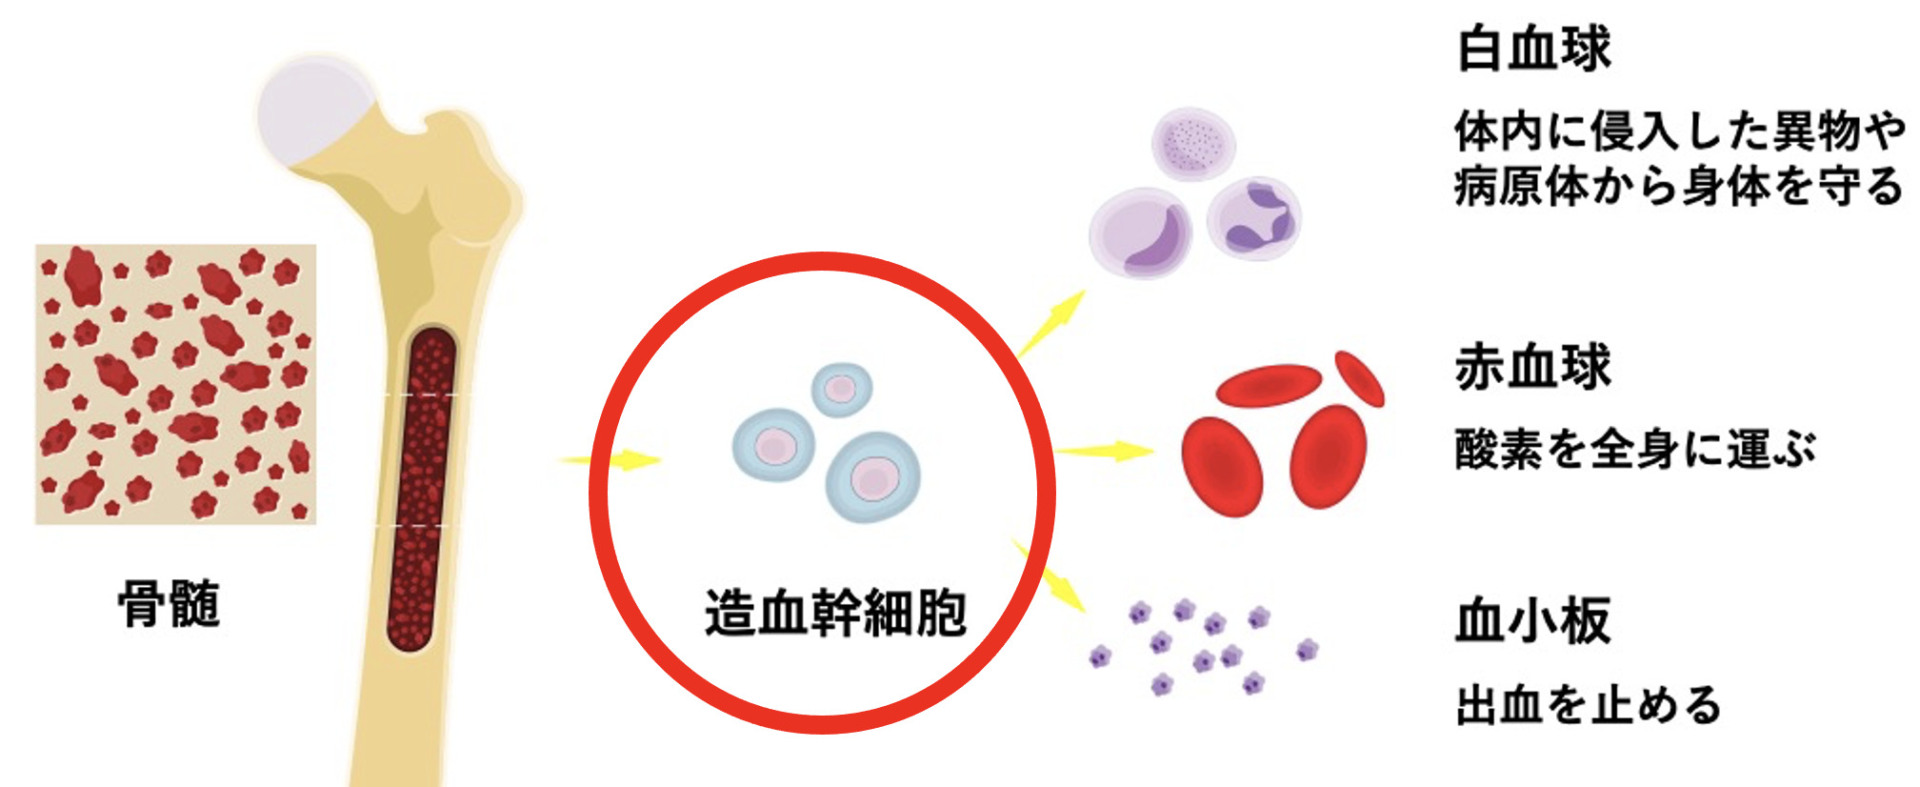 図 造血幹細胞の分化の様子